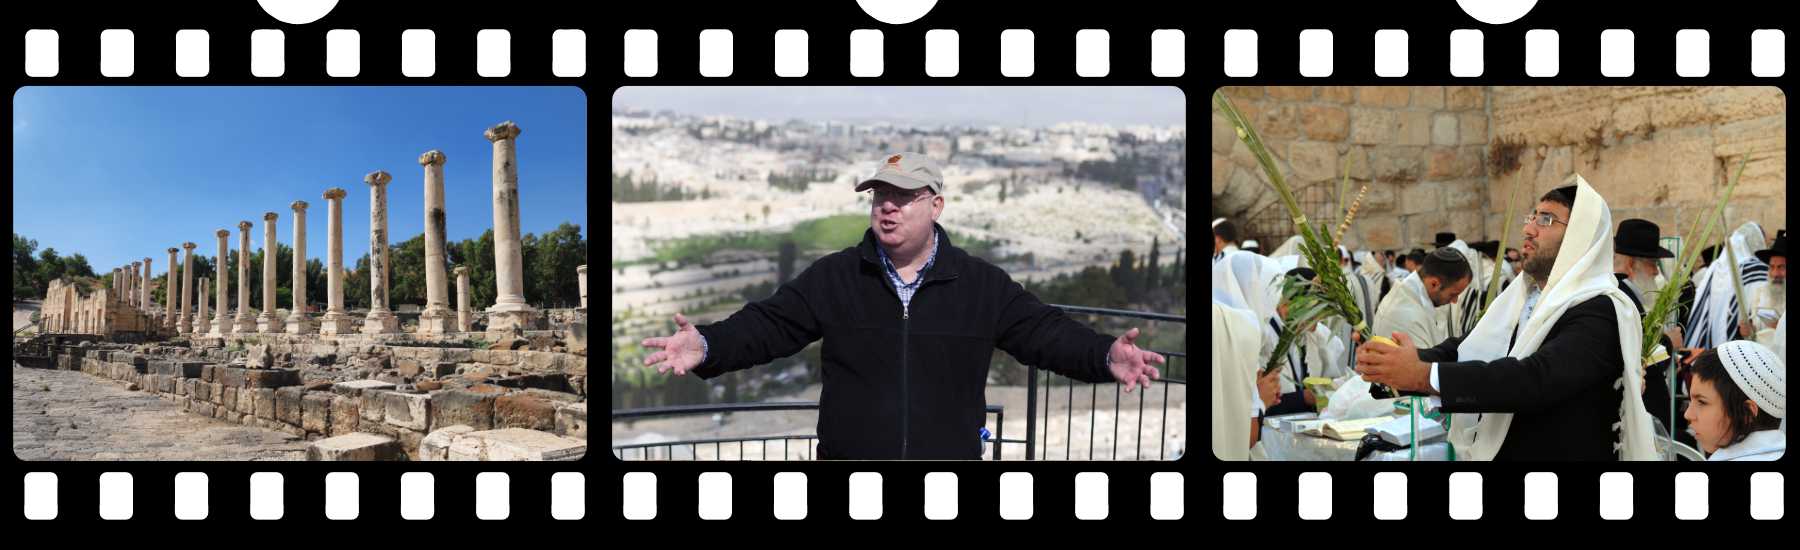 Filmstrip photo of Israel.